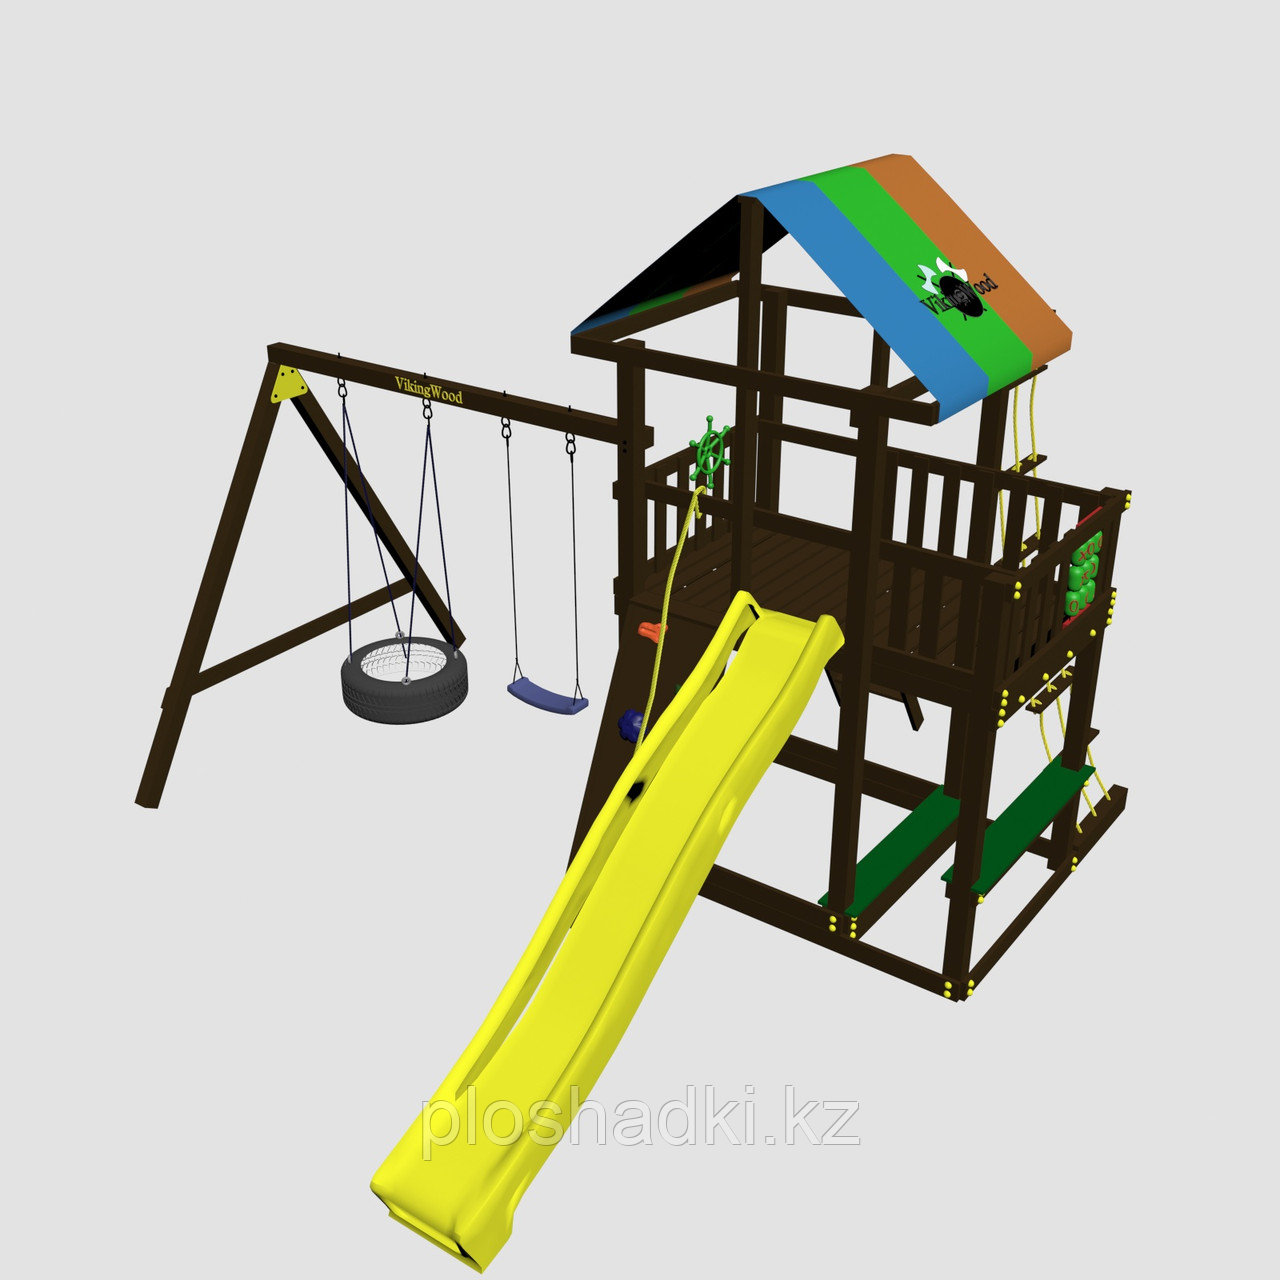 Детская площадка "Сиело с шиной", цветная крыша, канатная сетка, лестница из дерева, горка